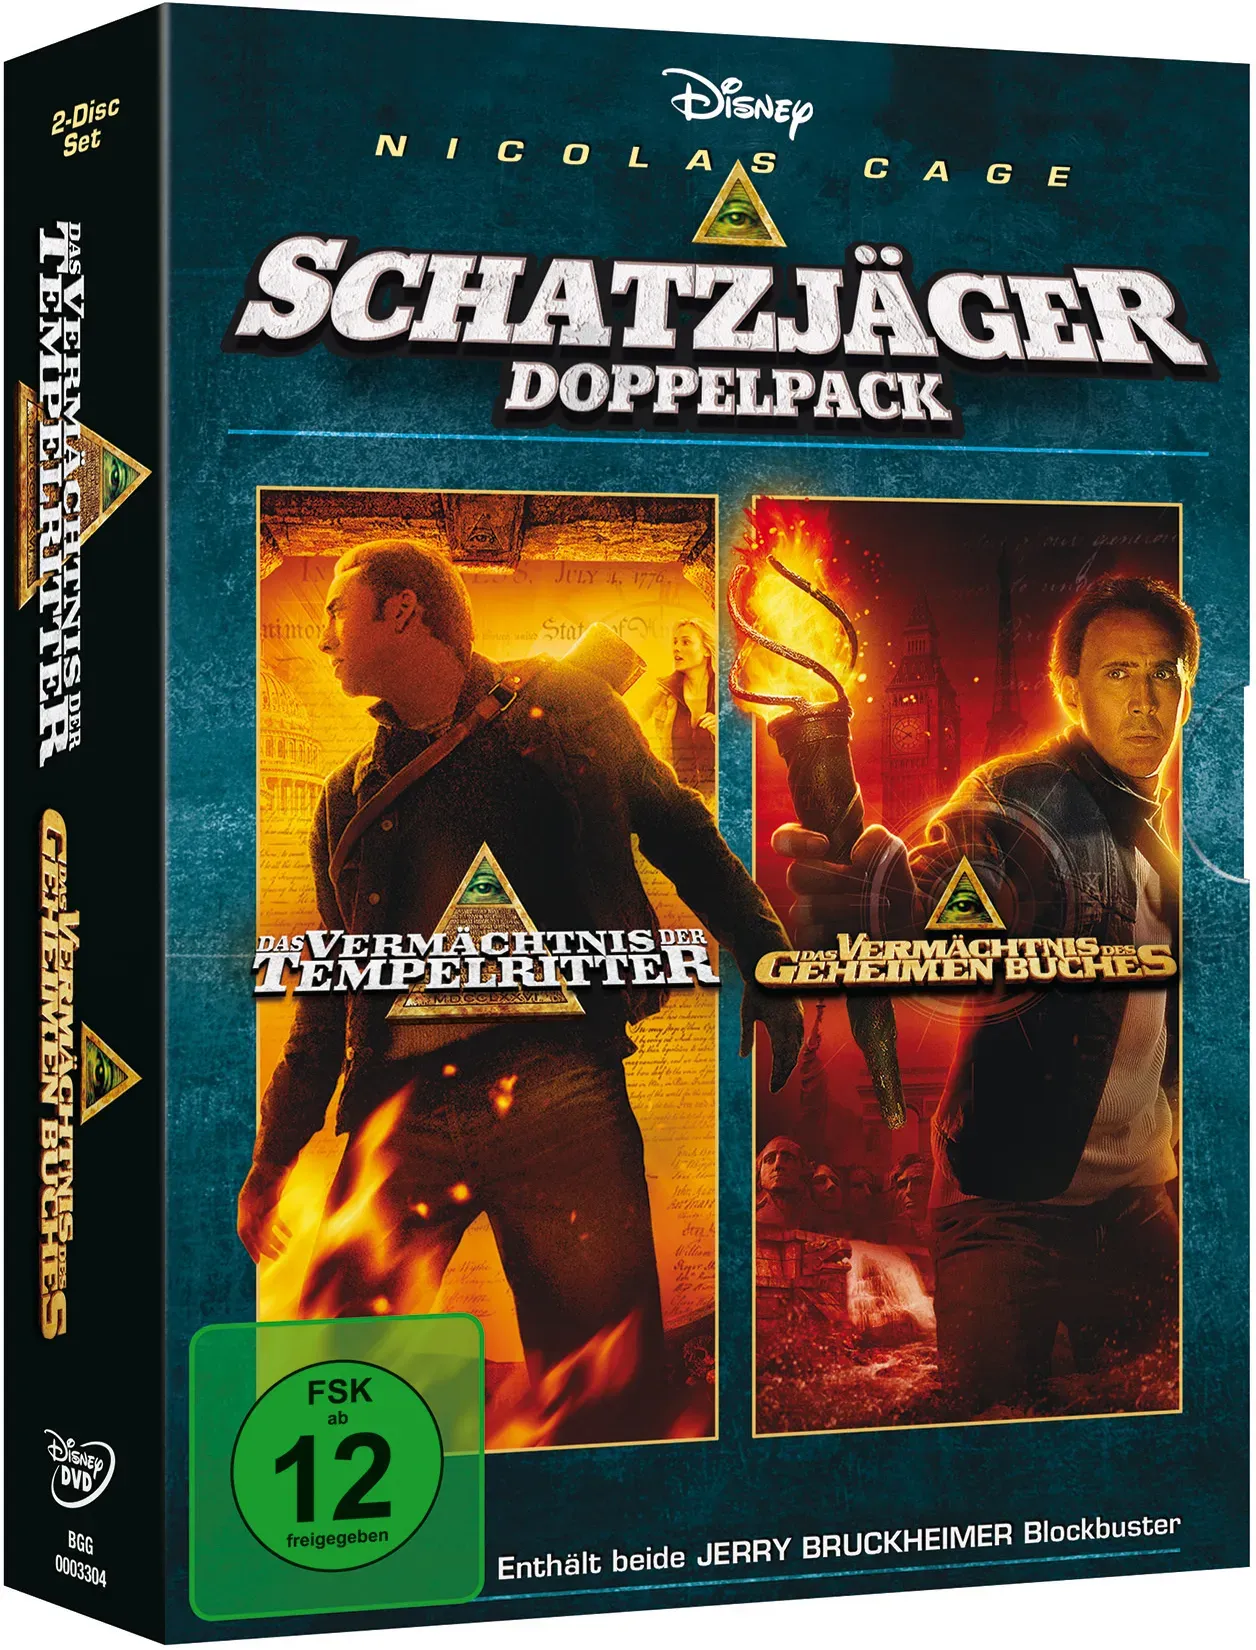 Das Vermächtnis Der Tempelritter / Das Vermächtnis Des Geheimen Buches (DVD)